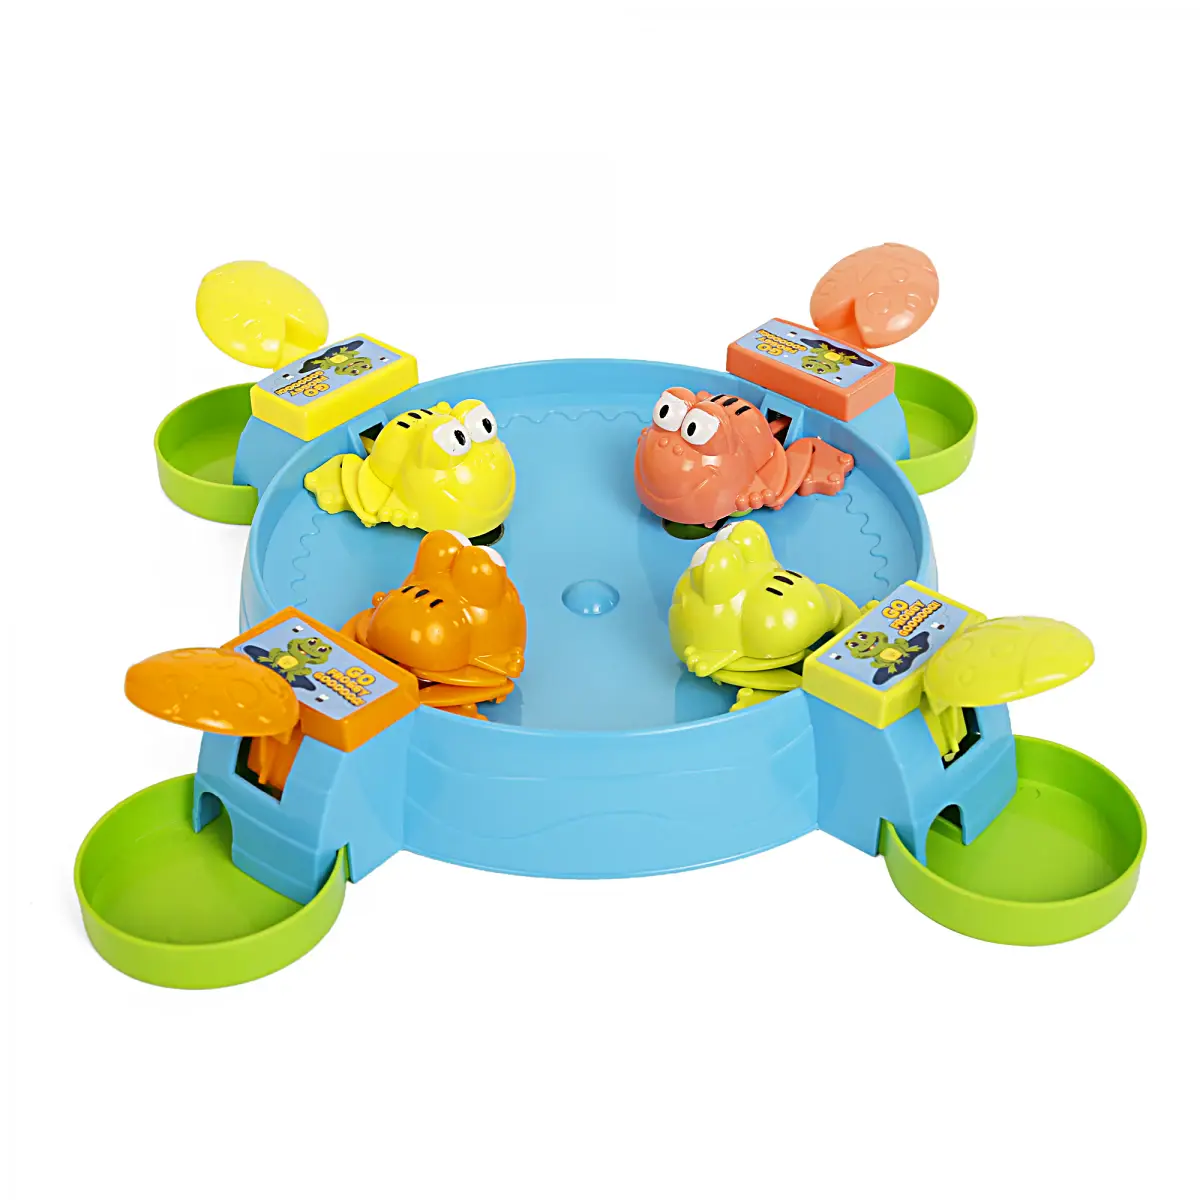 Youreka Go Froggy Go Games & Puzzles, 4Y+, Multicolour